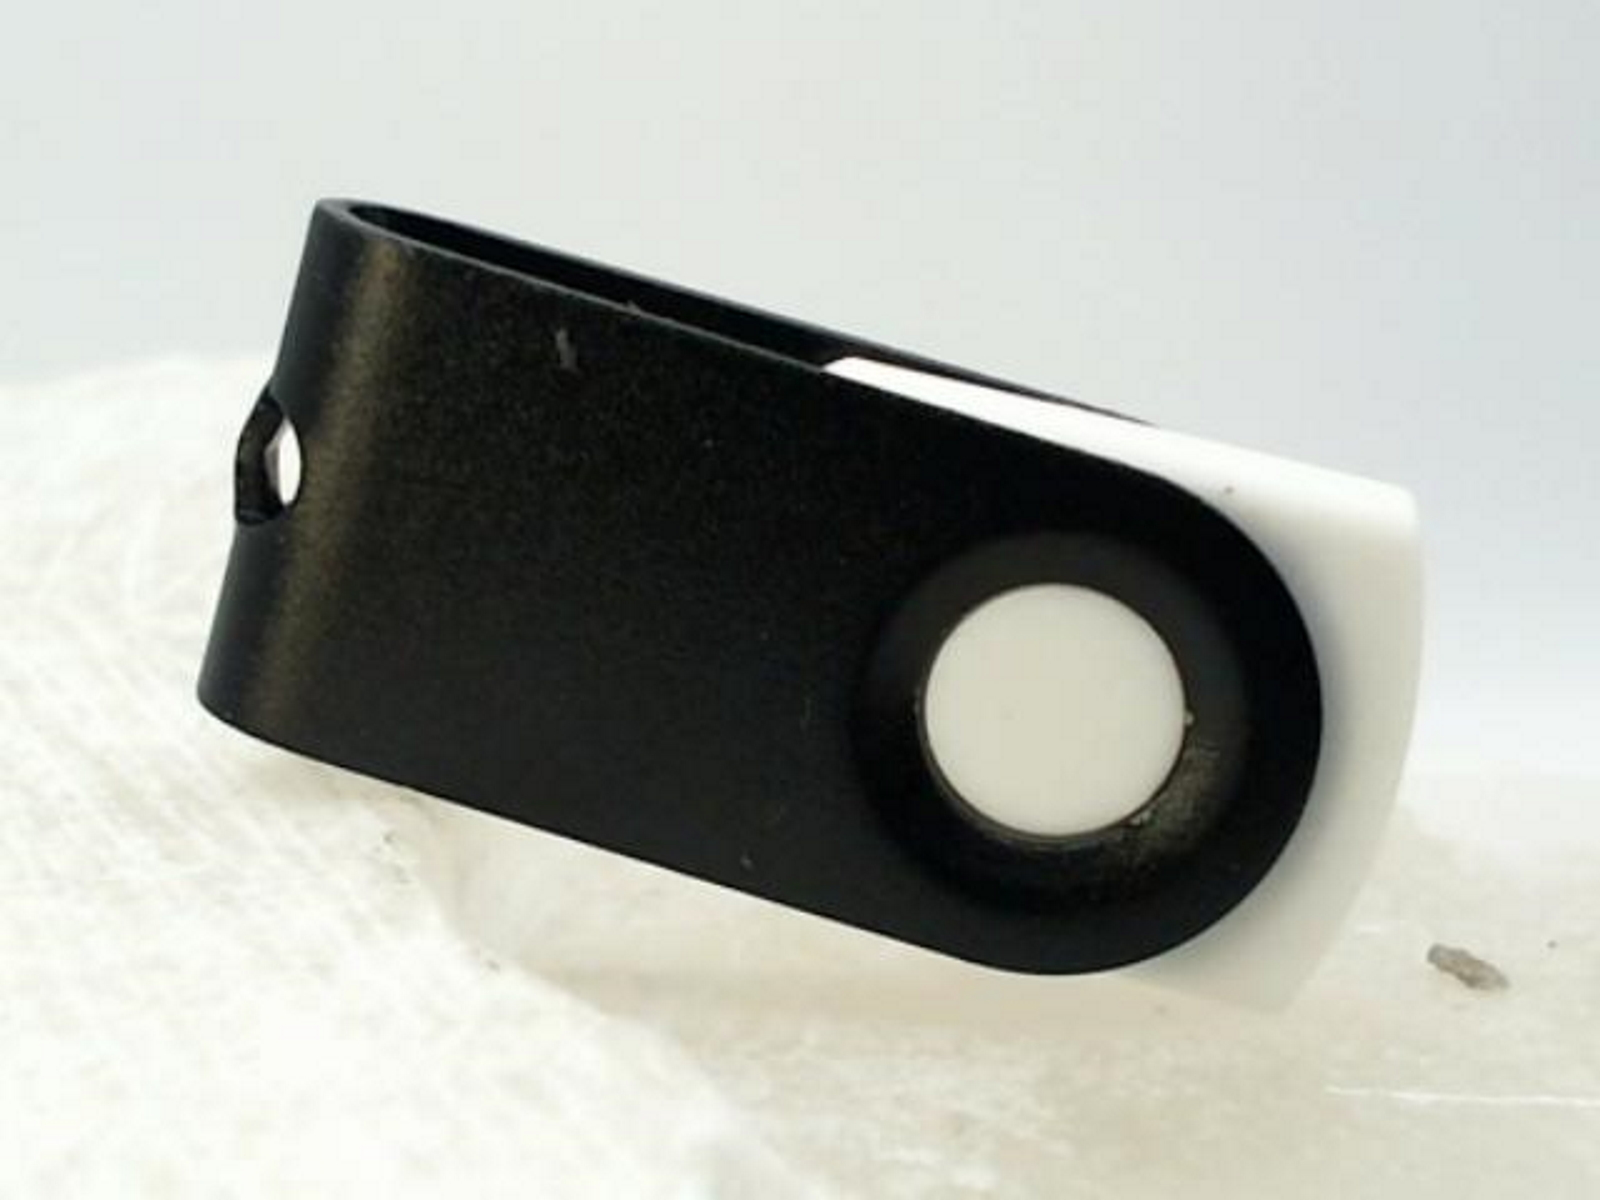 USB GERMANY ® GB) USB-Stick (Weiß-Schwarz, 1 MINI-SWIVEL